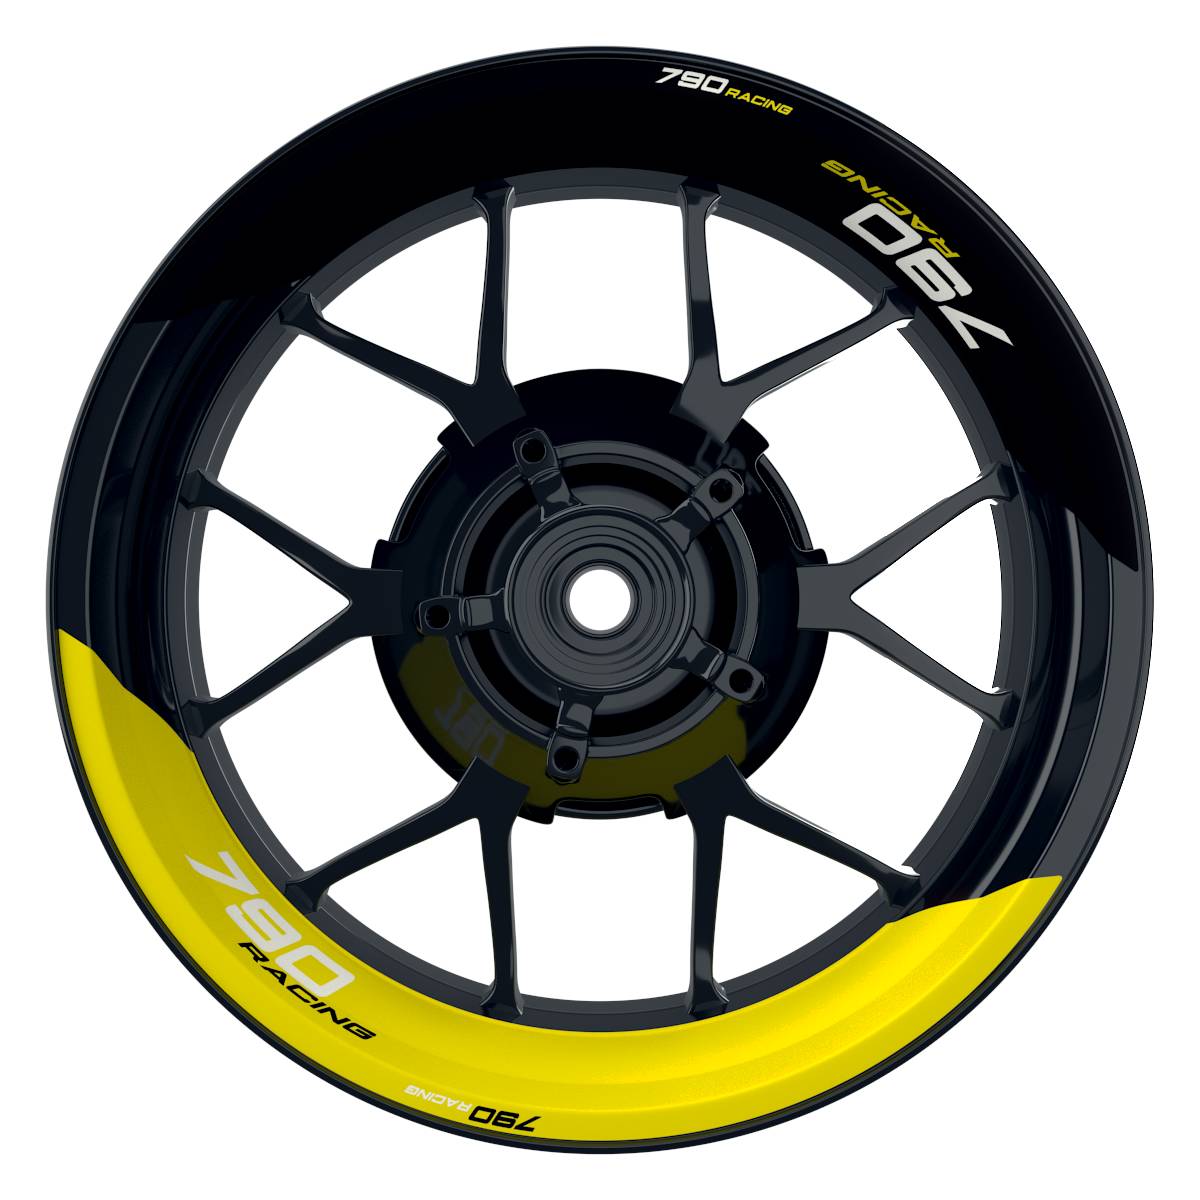 KTM Racing 790 halb halb schwarz gelb Frontansicht